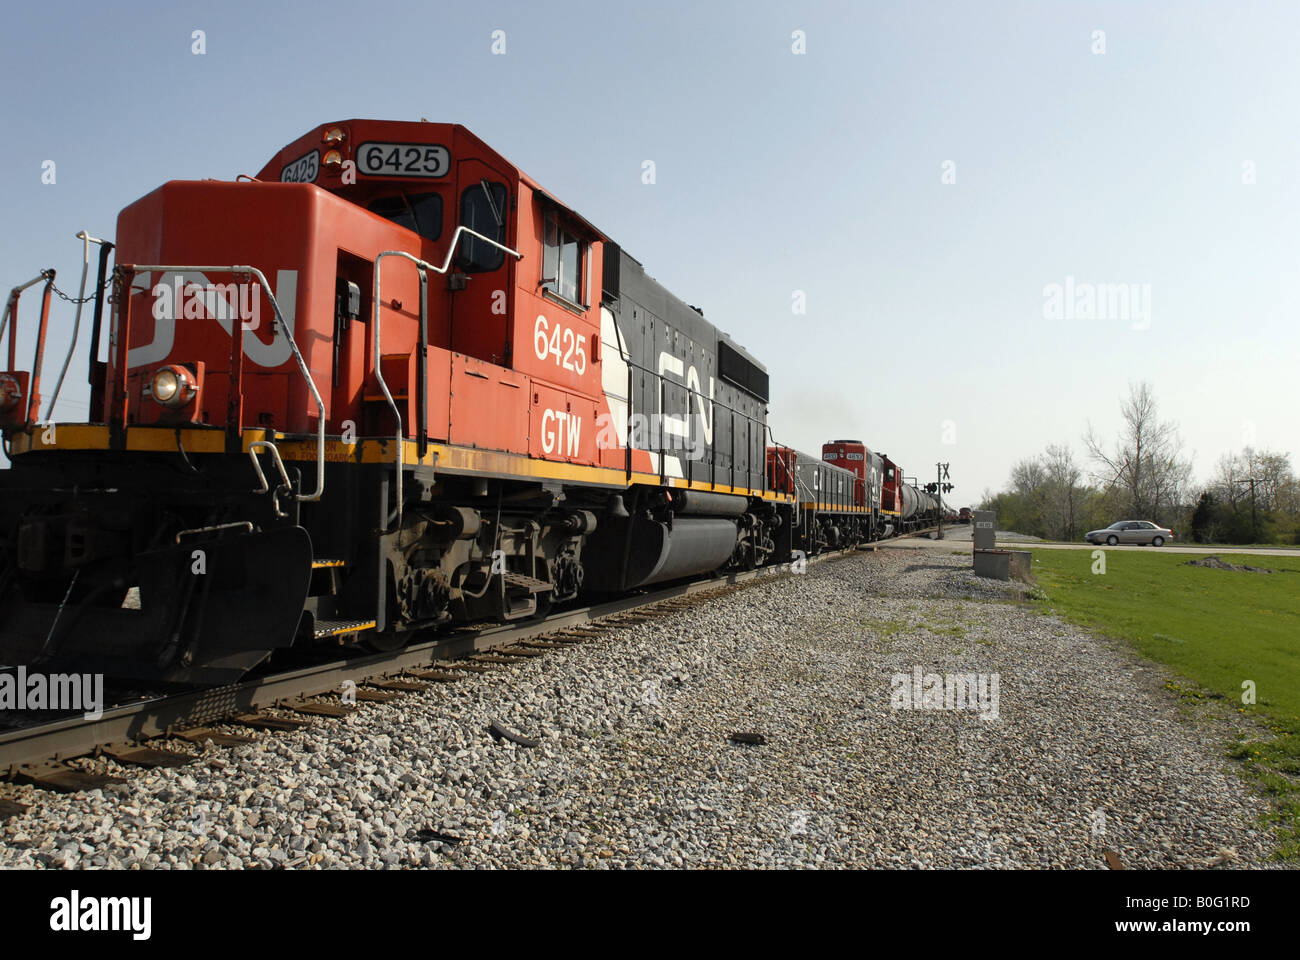 Un train de marchandises du Canadien National traverse un chemin rural dans le midwest des États-Unis près de Chicago. Banque D'Images